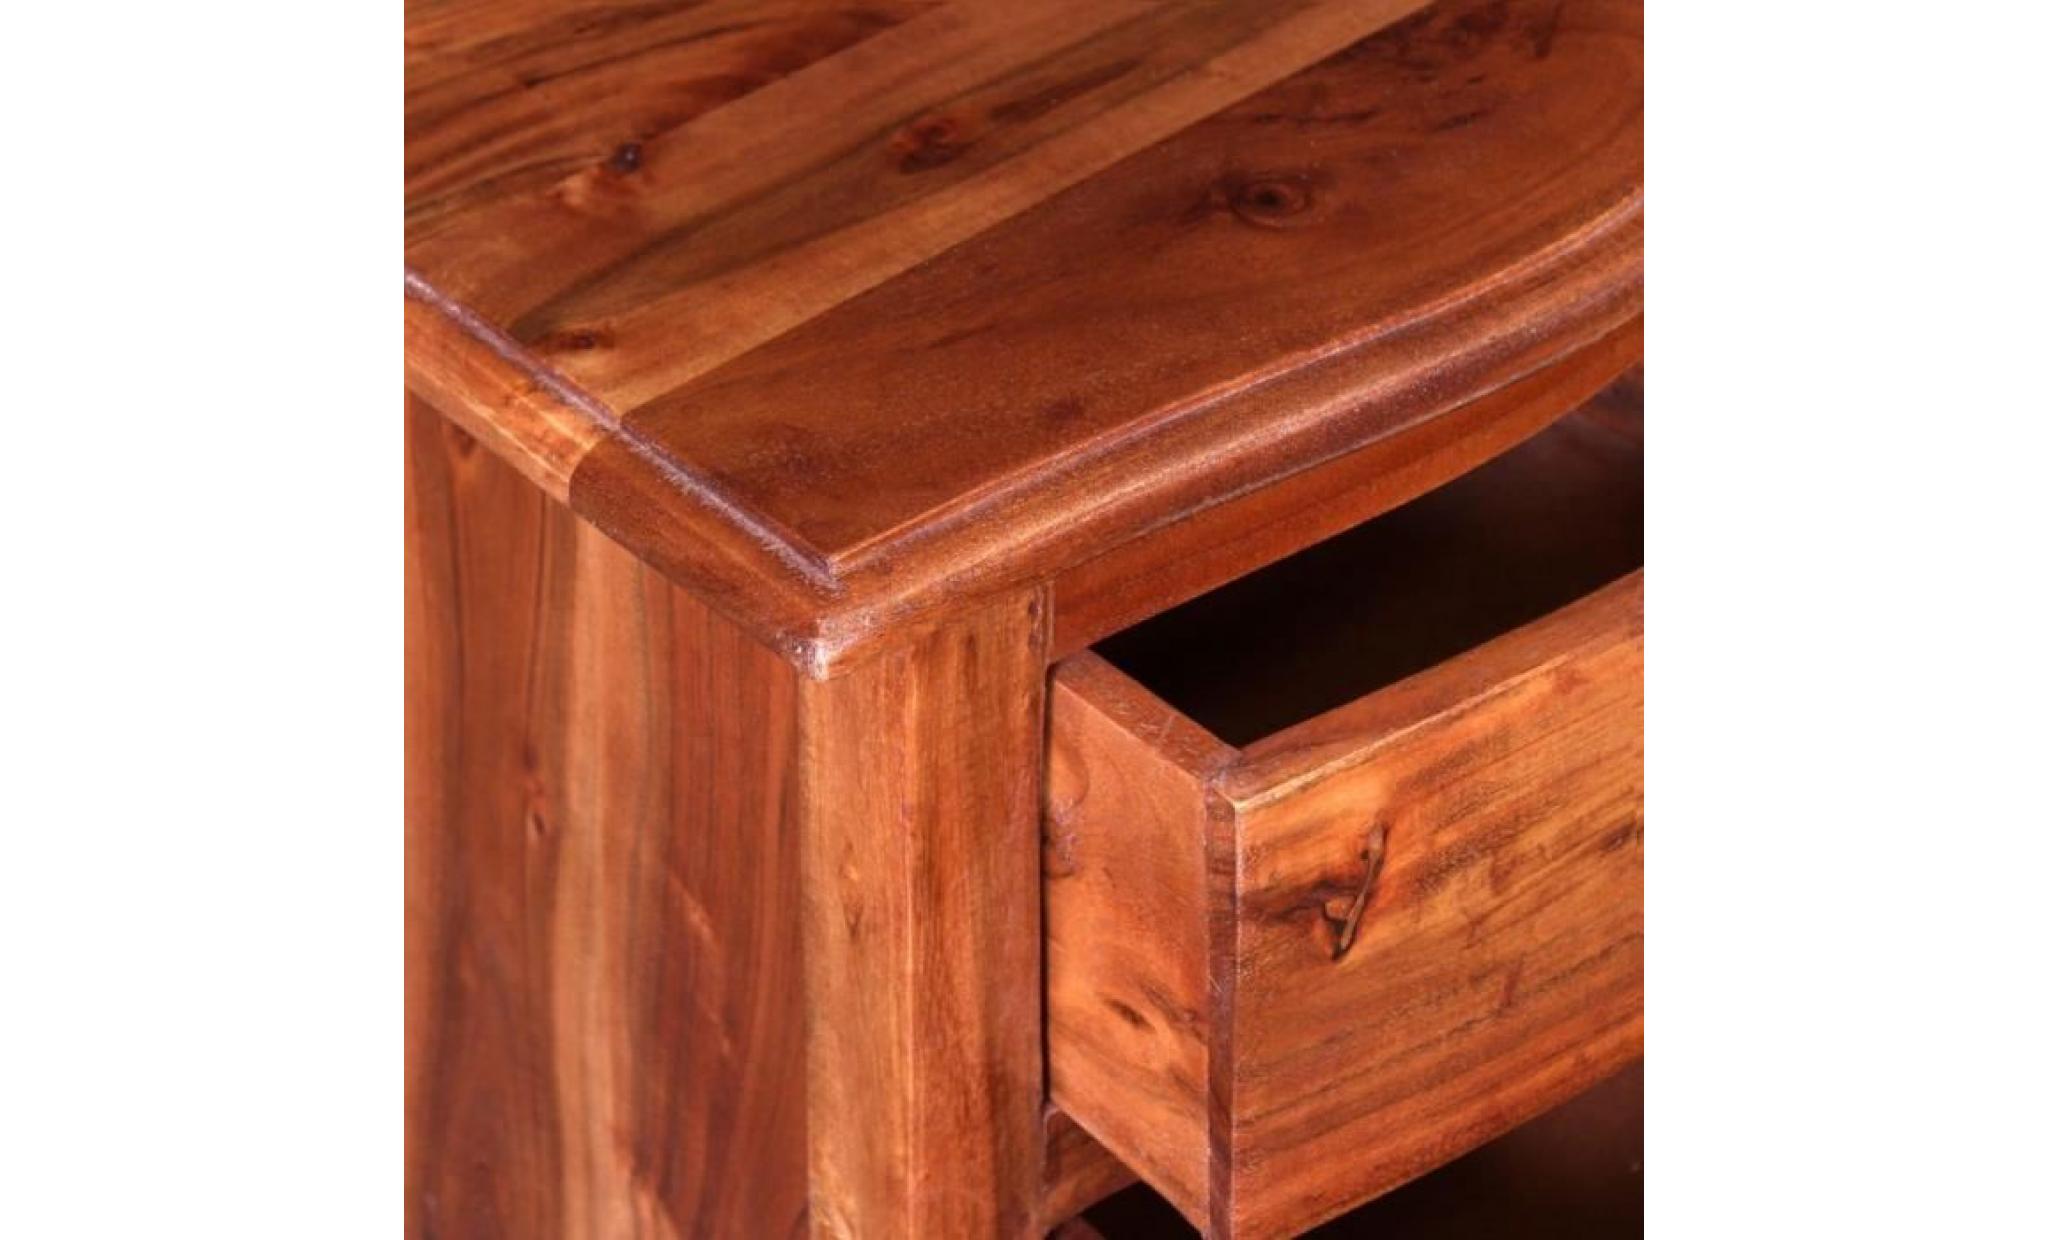 table de chevet en bois d'acacia massif avec un vernis mat ajoutera une touche de charme vintage à votre décor. la table de chevet